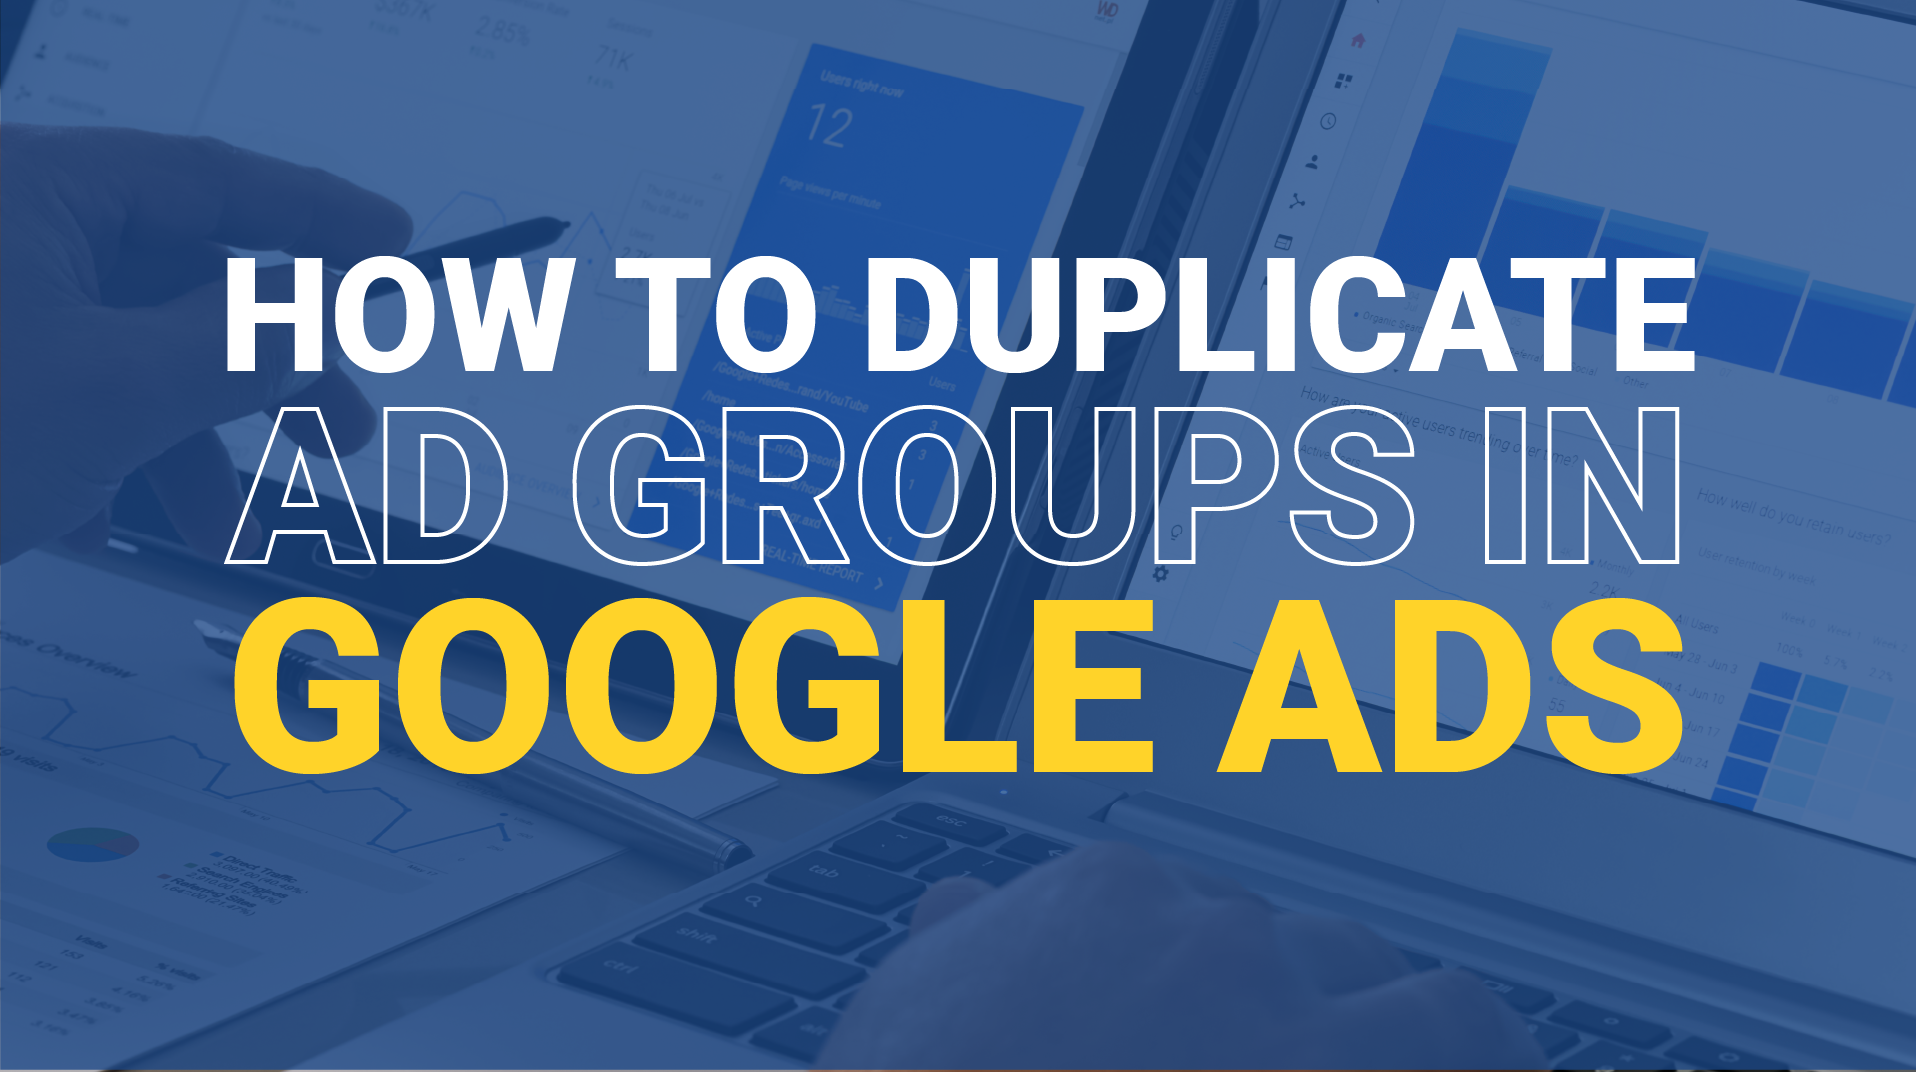 Duplicate Google Ads Campaign